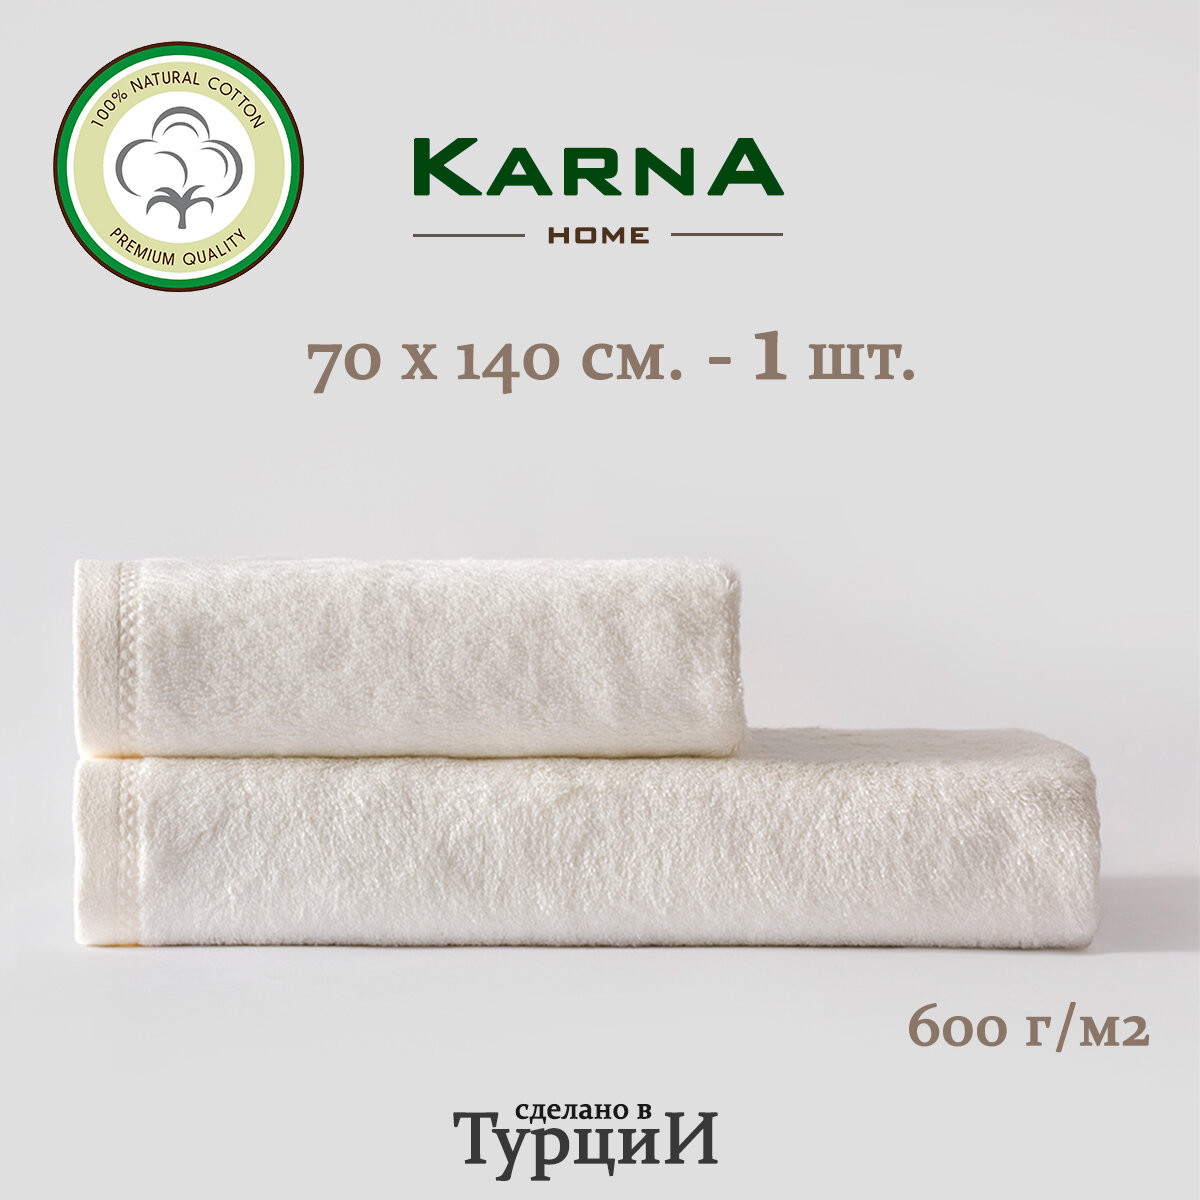 Полотенце KARNA AKRA белое 70х140.